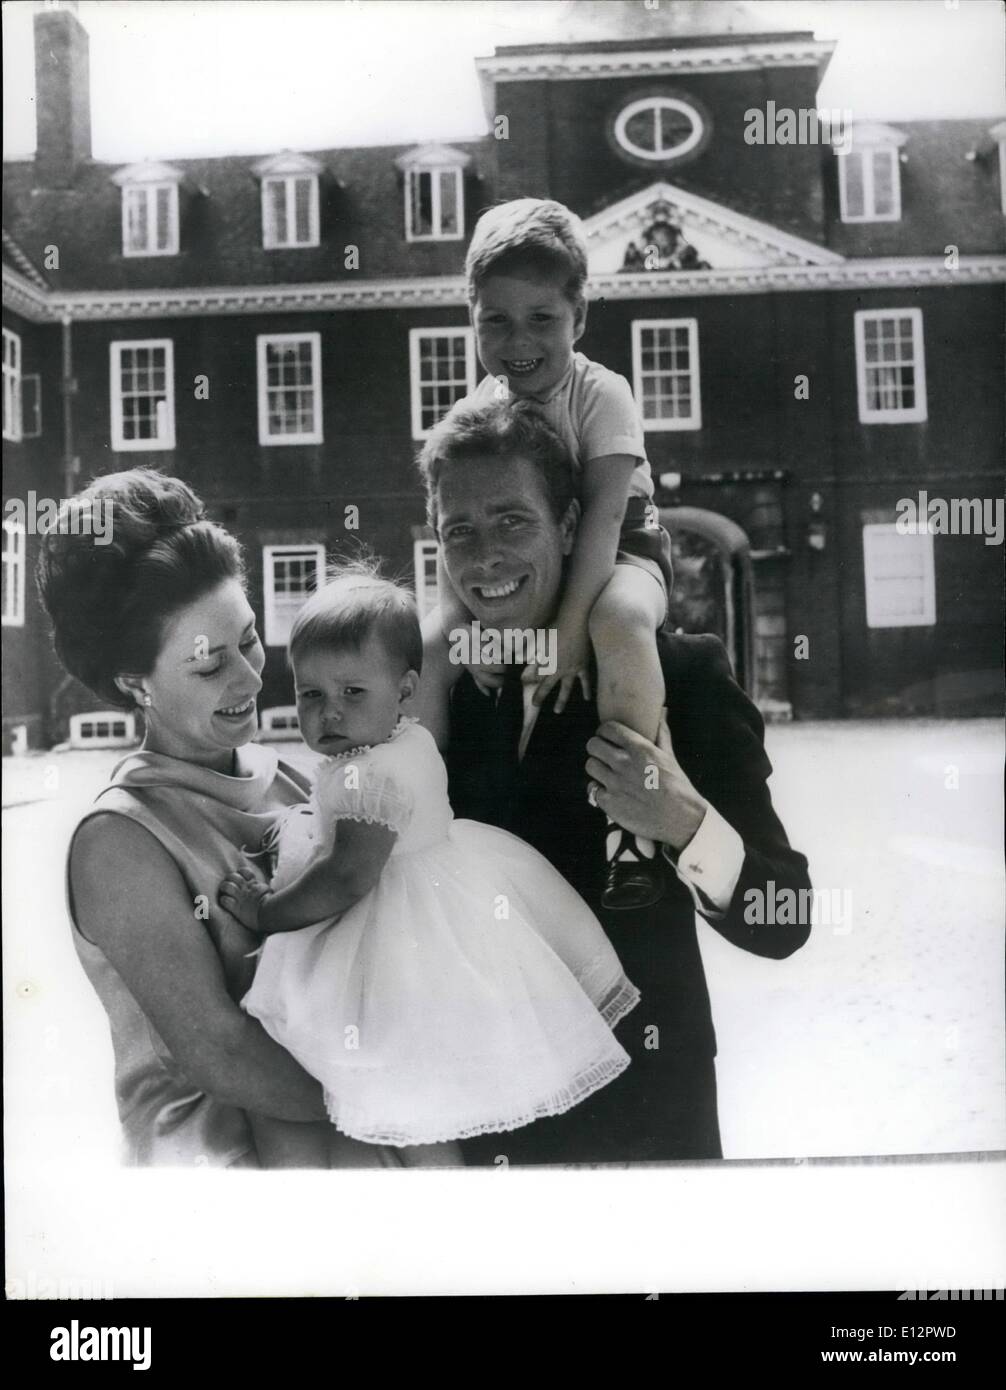 Febbraio 24, 2012 - Una nuova immagine della Principessa Margaret, il conte di Snowdon e i loro figli: un felice studio di S.A.R. La principessa Margaret con suo marito il Conte di Snowdon e i loro due bambini presi nell'orologio corte di Kensington Palace di Londra. Signora Sarah che indossa un vestito di bianco organze, rifinito con pizzo bianco, è nato il 1 maggio. 1964. Signore Linley (su di suo padre a spalle) nacque il 3 Novembre,1961. Foto Stock